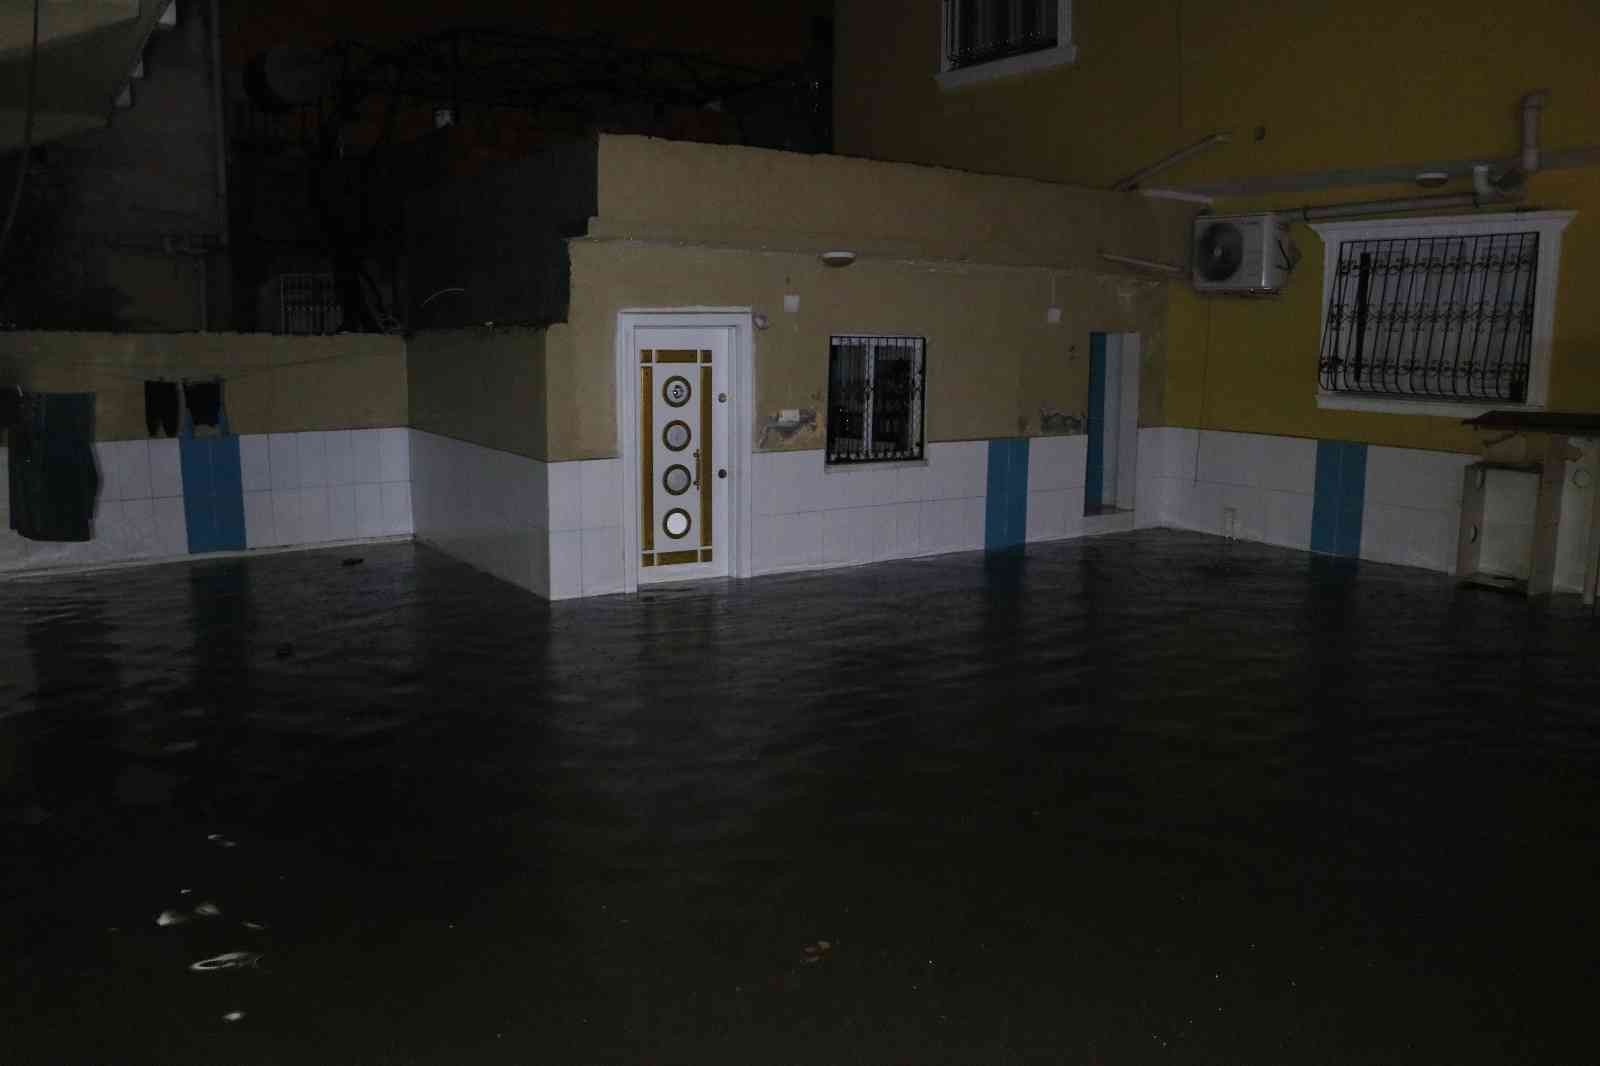 Sağanak yağış nedeniyle evi su bastı, itfaiye suyu tahliye etti #adana